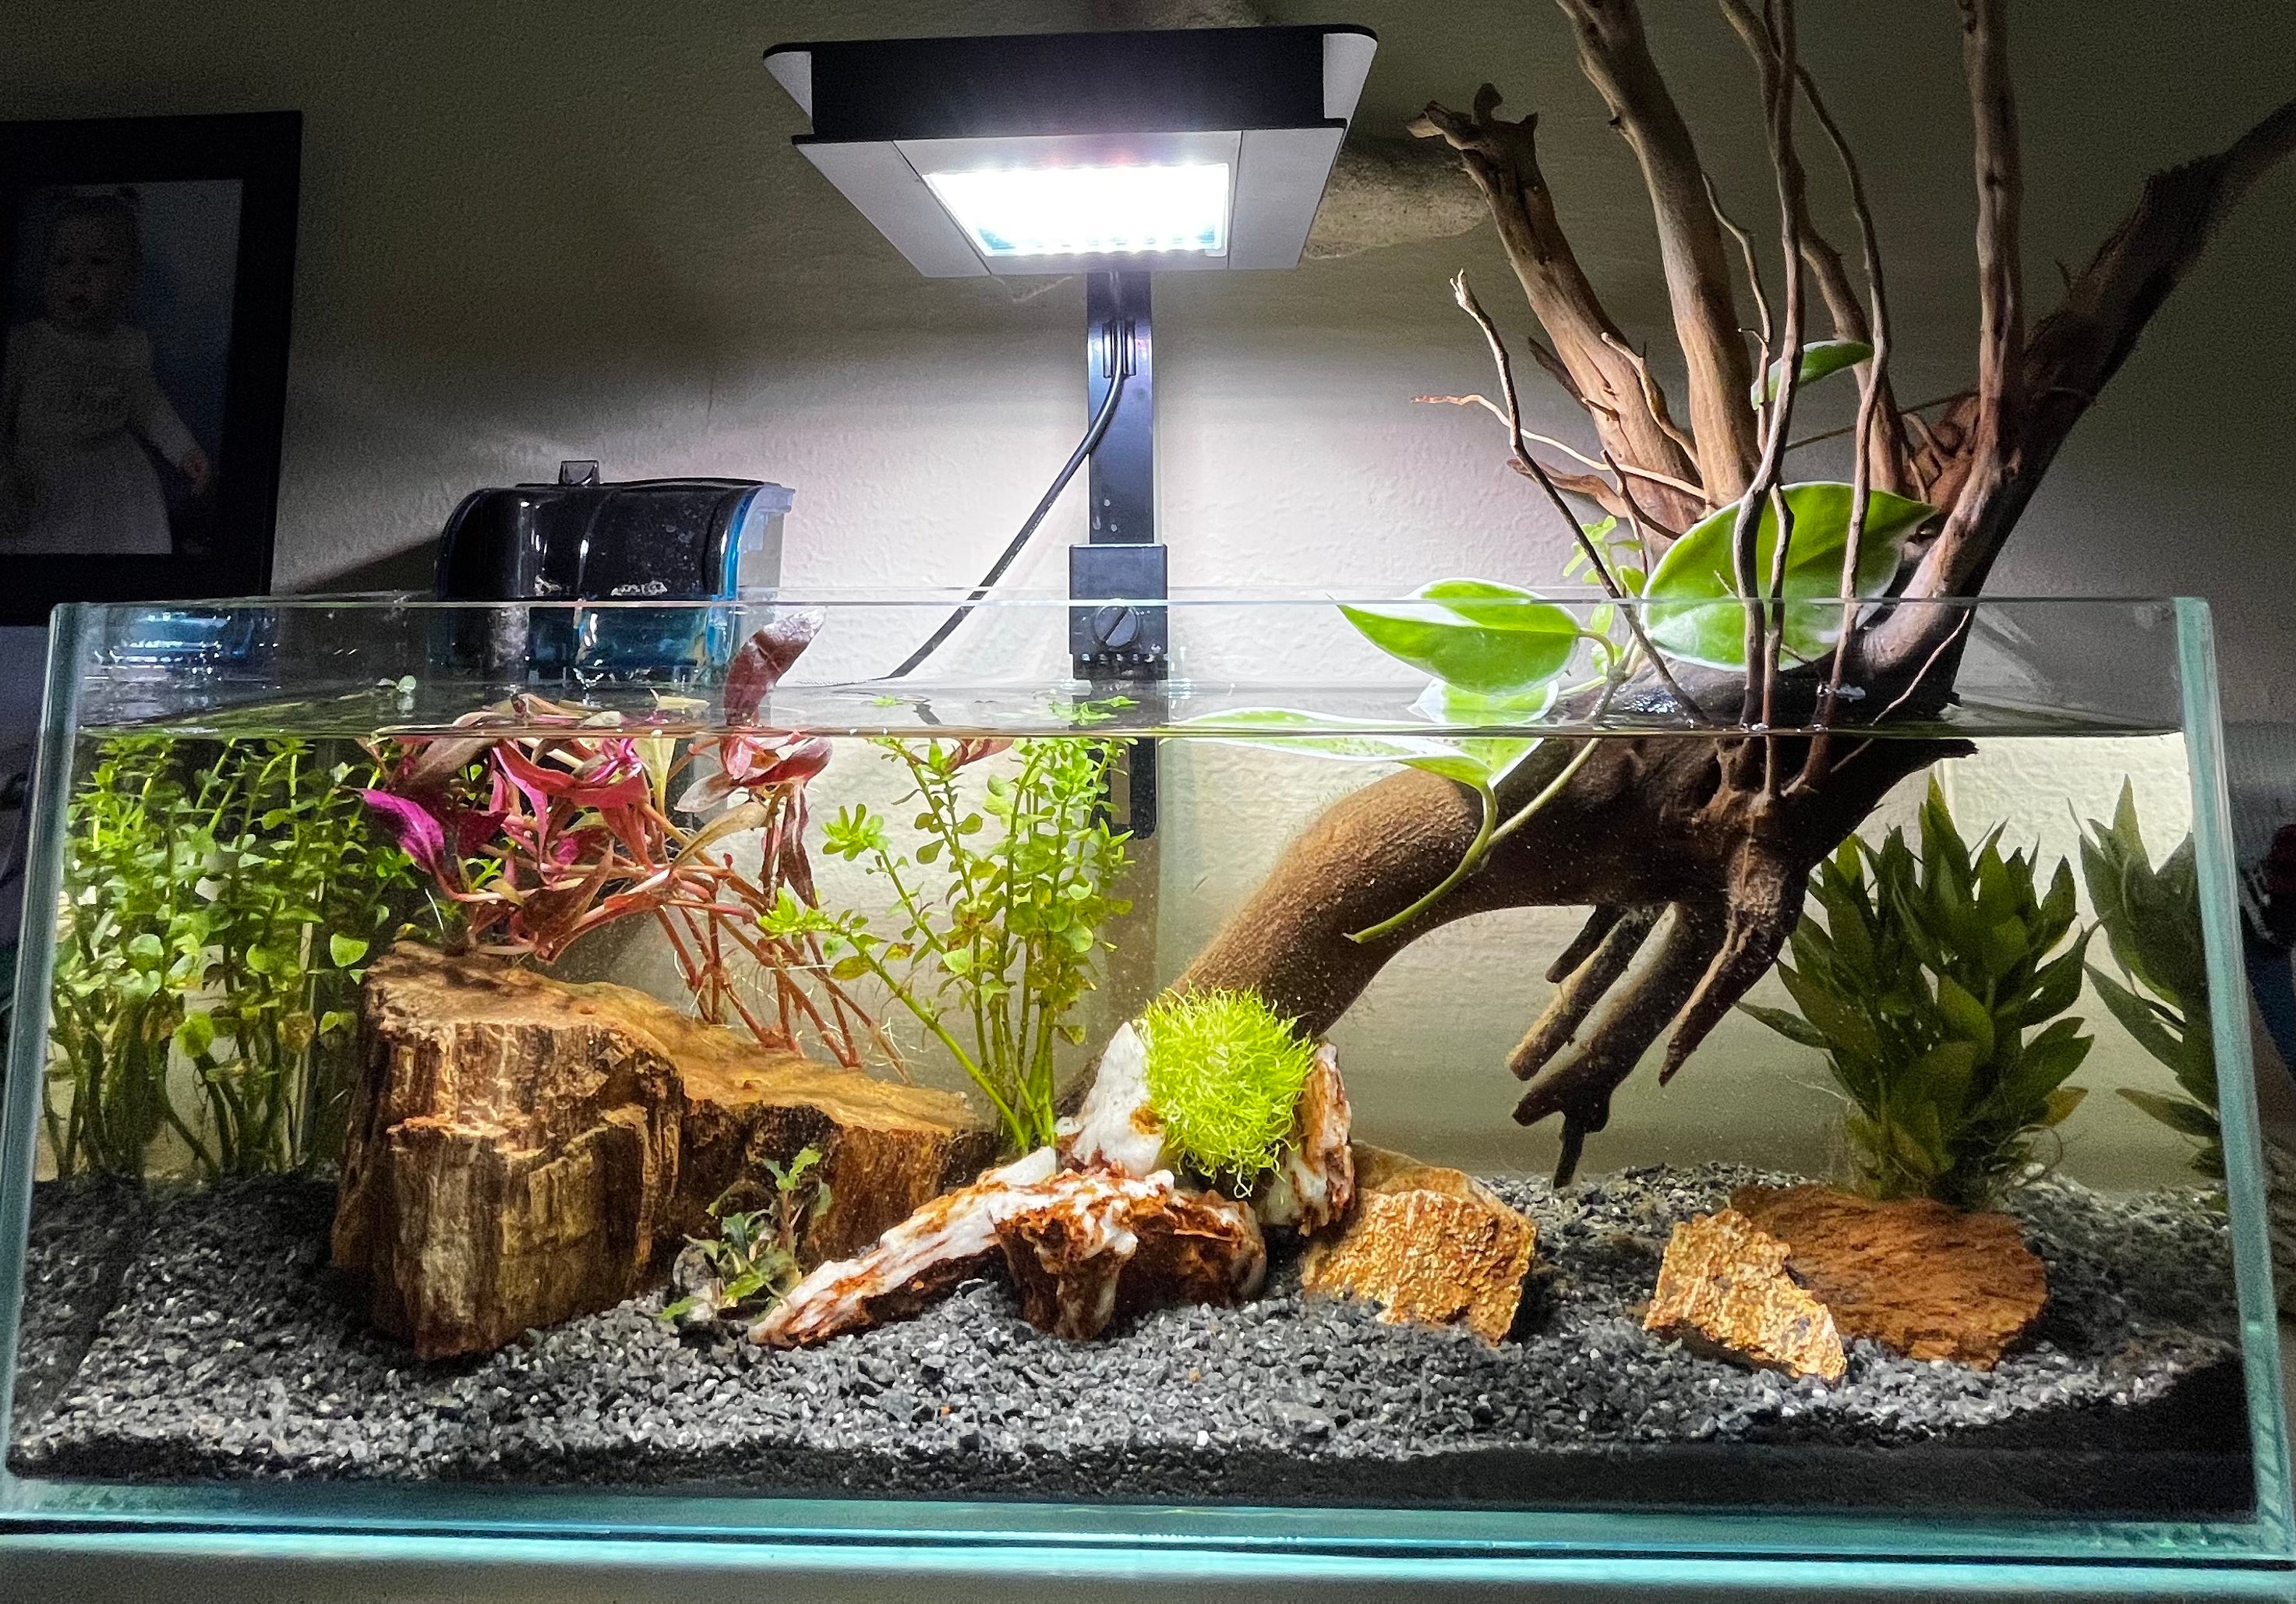 Aquarium Lighting LEDs – The Bio